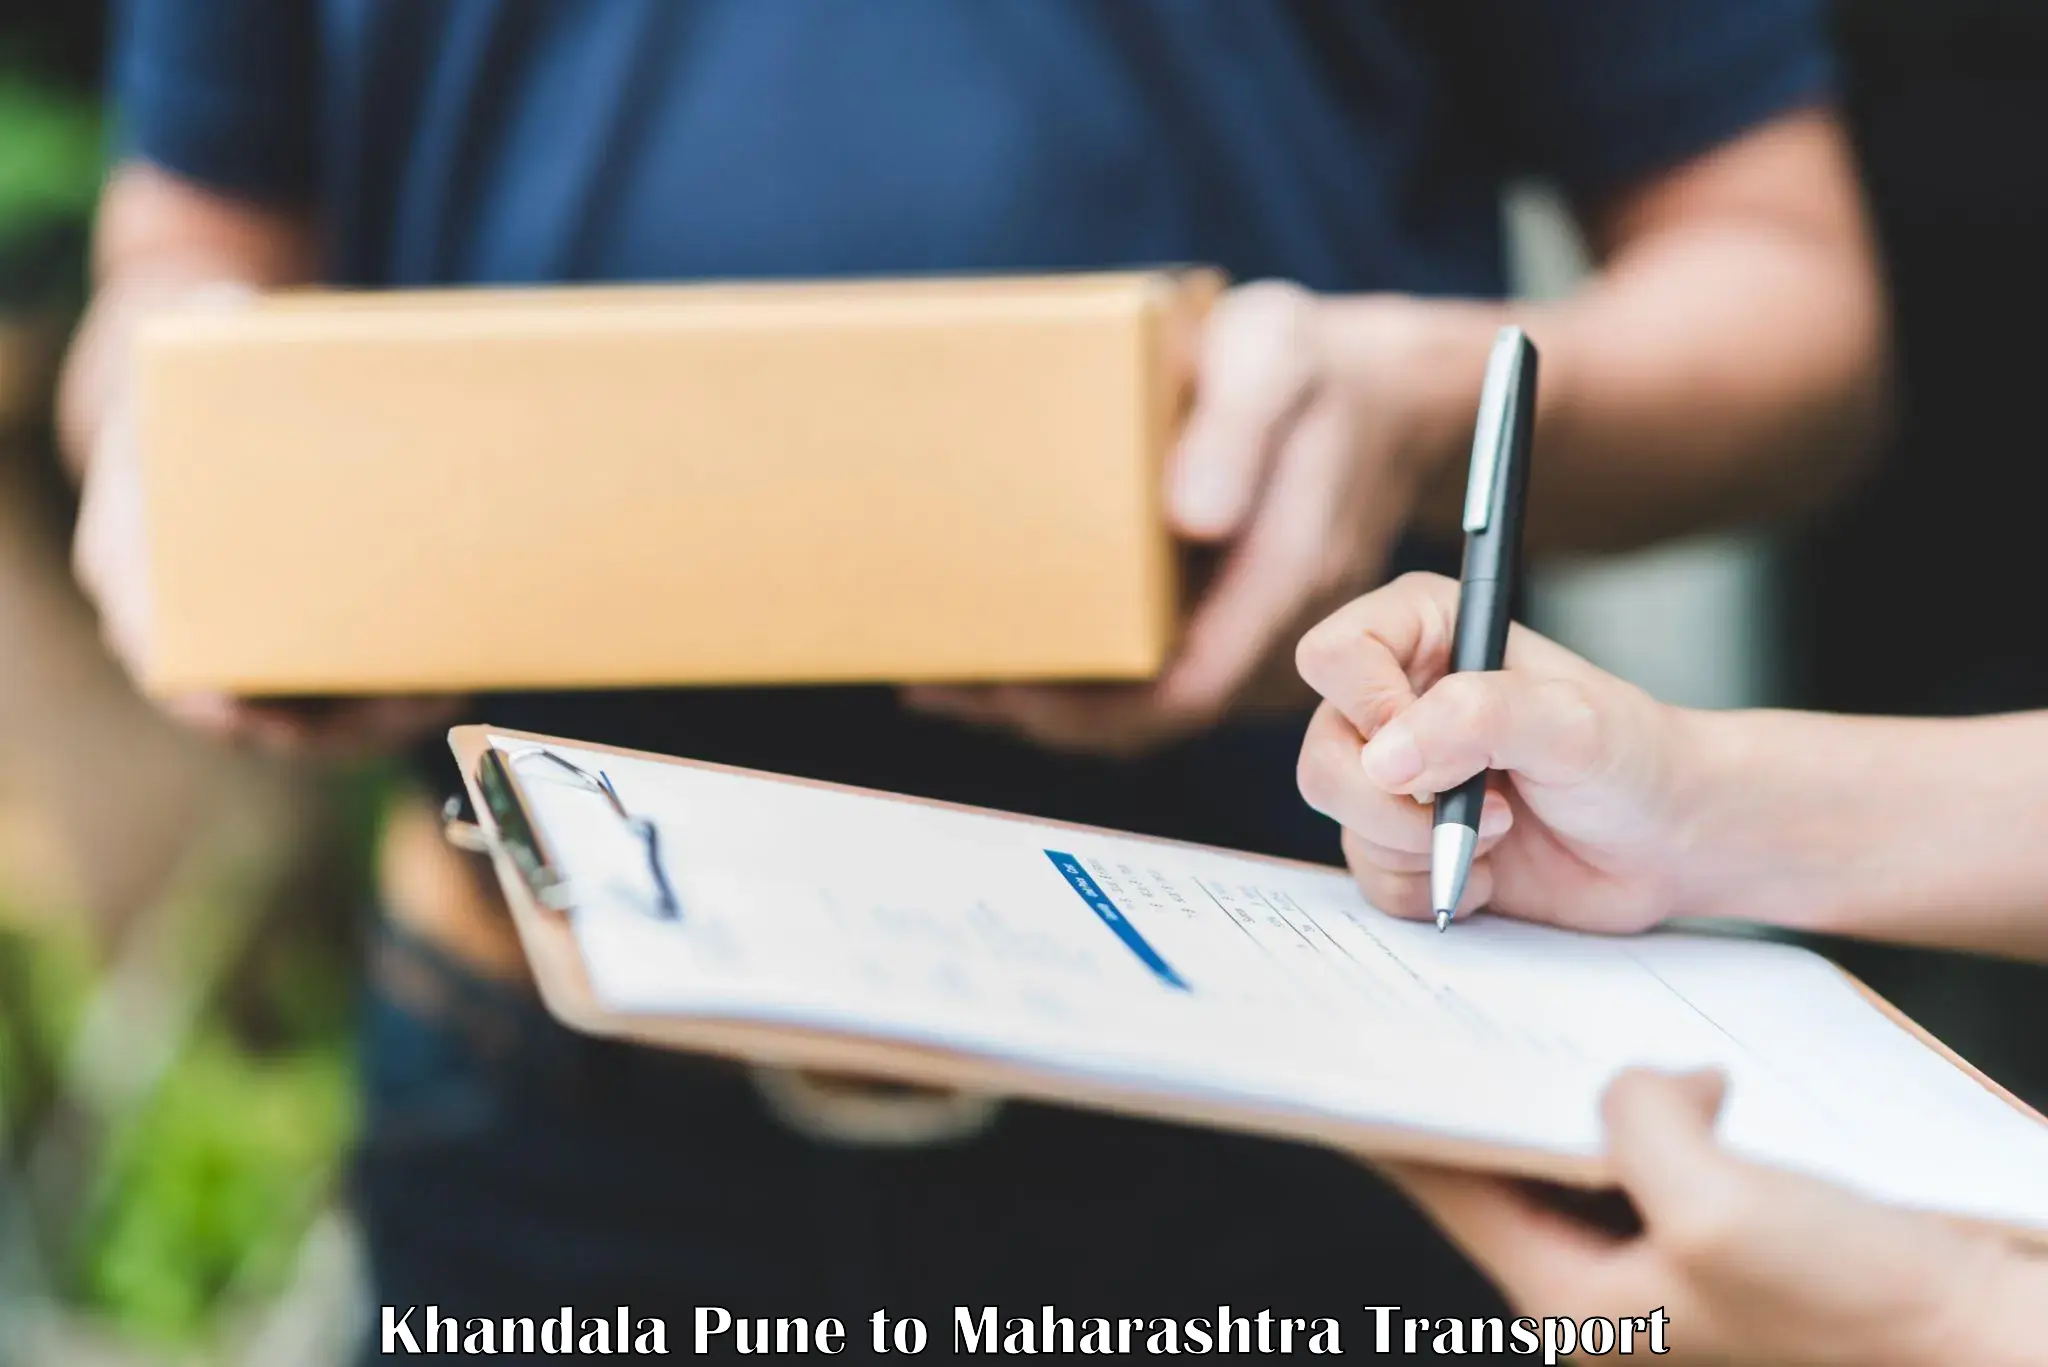 Nationwide transport services Khandala Pune to Umarkhed